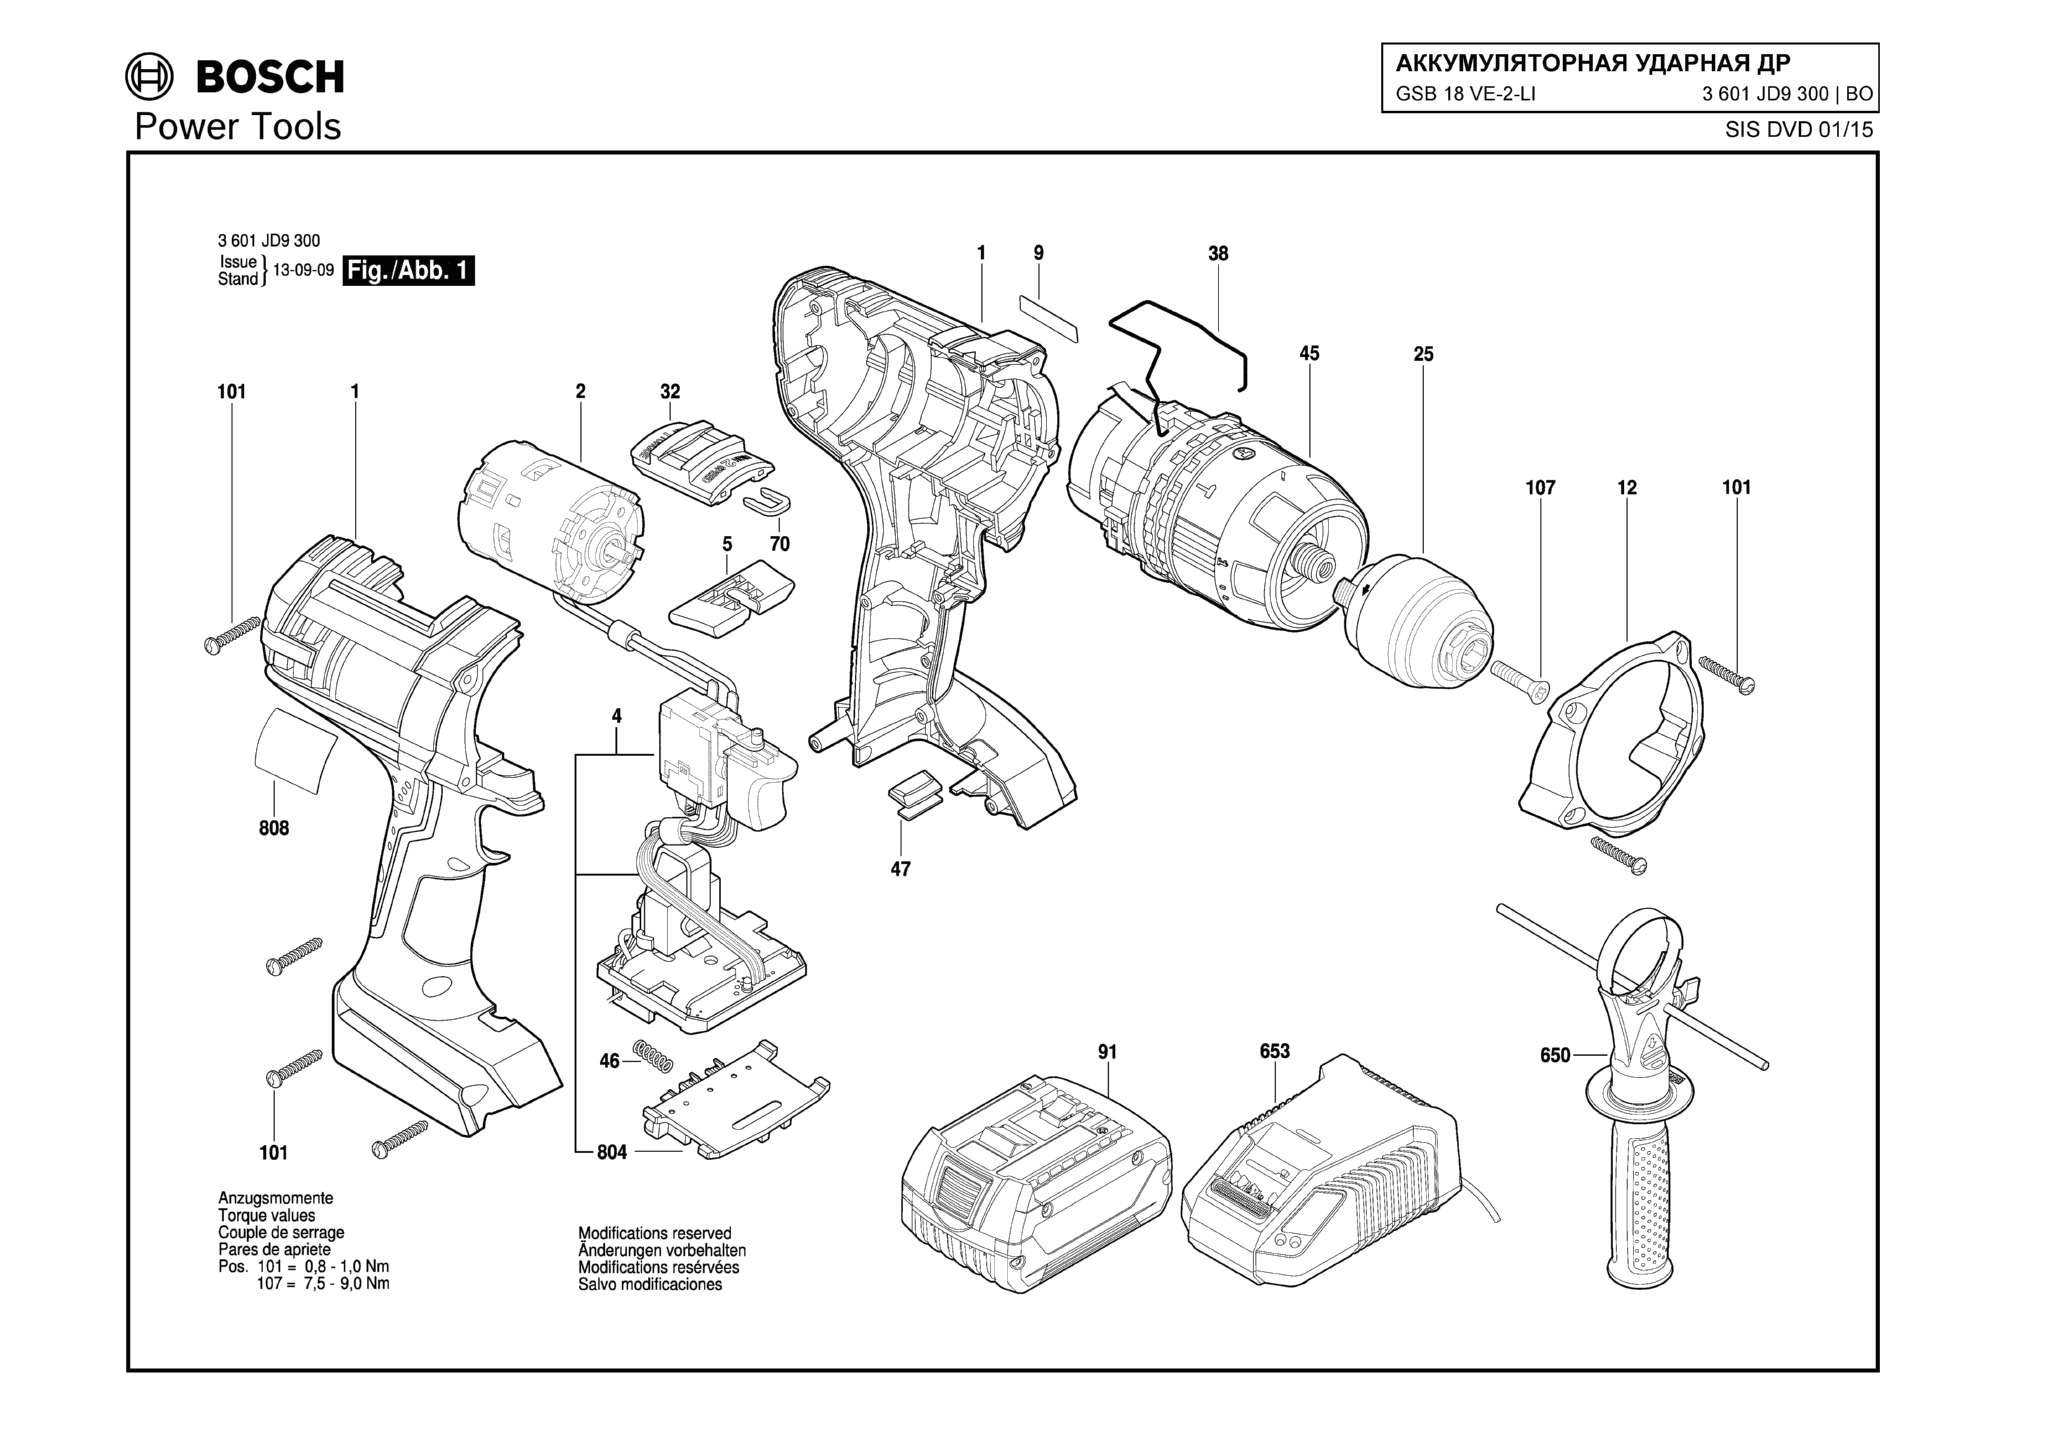 Запчасти, схема и деталировка Bosch GSB 18 VE-2-LI (ТИП 3601H62300)